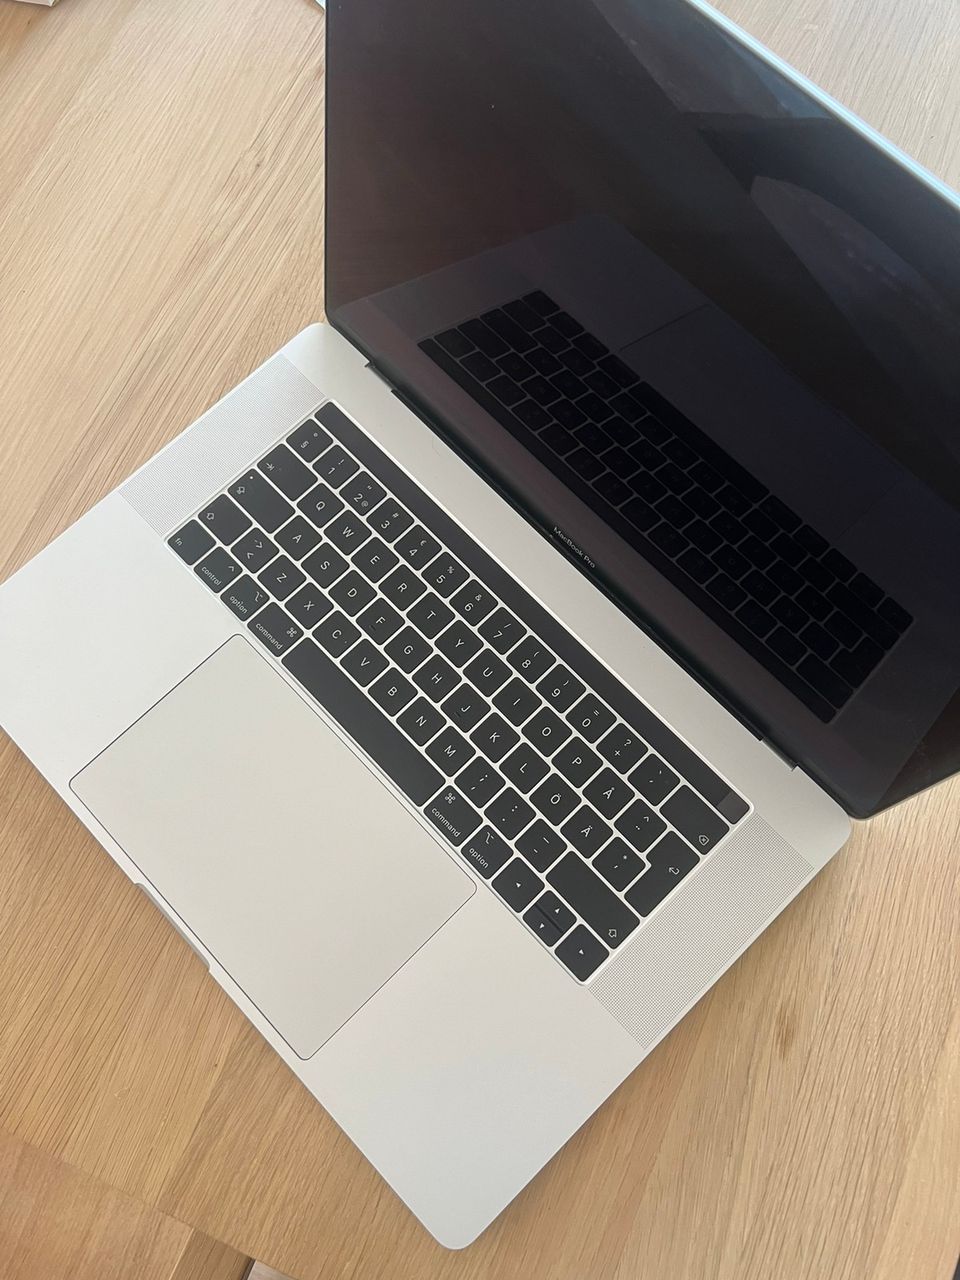 Macbook Pro 15” 2018